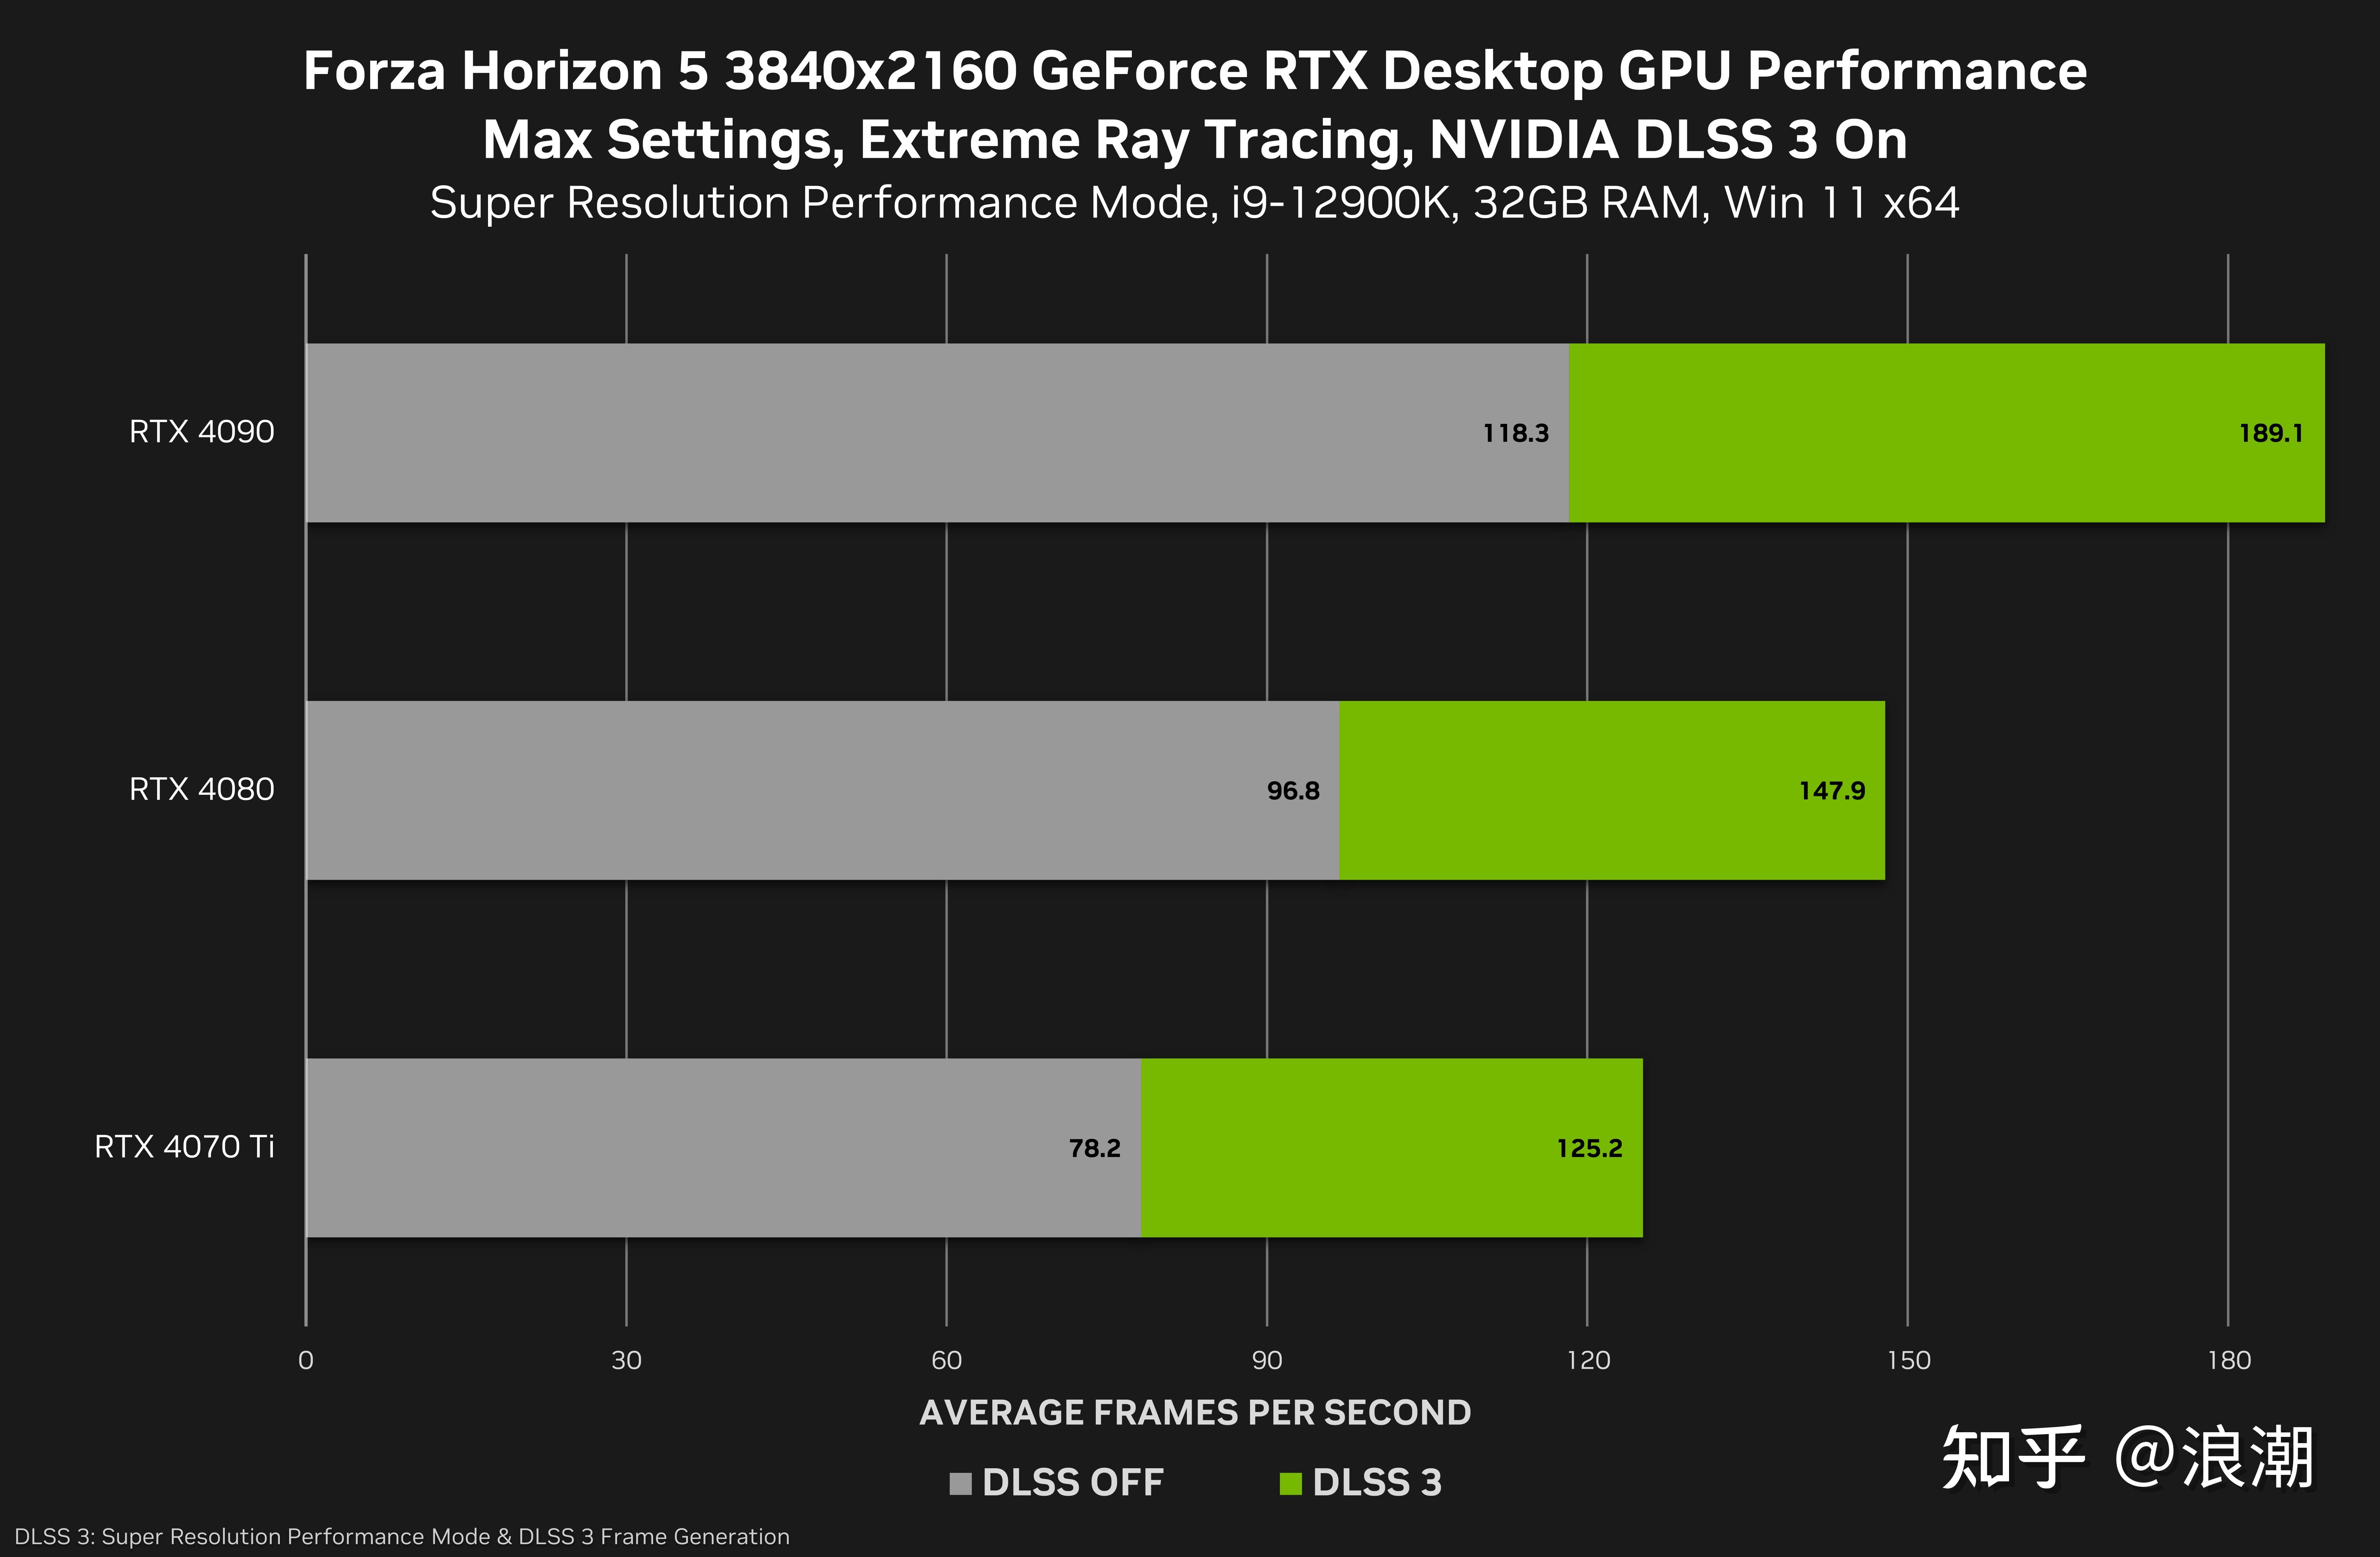 DDR51G 显卡：性能强劲但价格较高，选购需结合个人需求  第9张